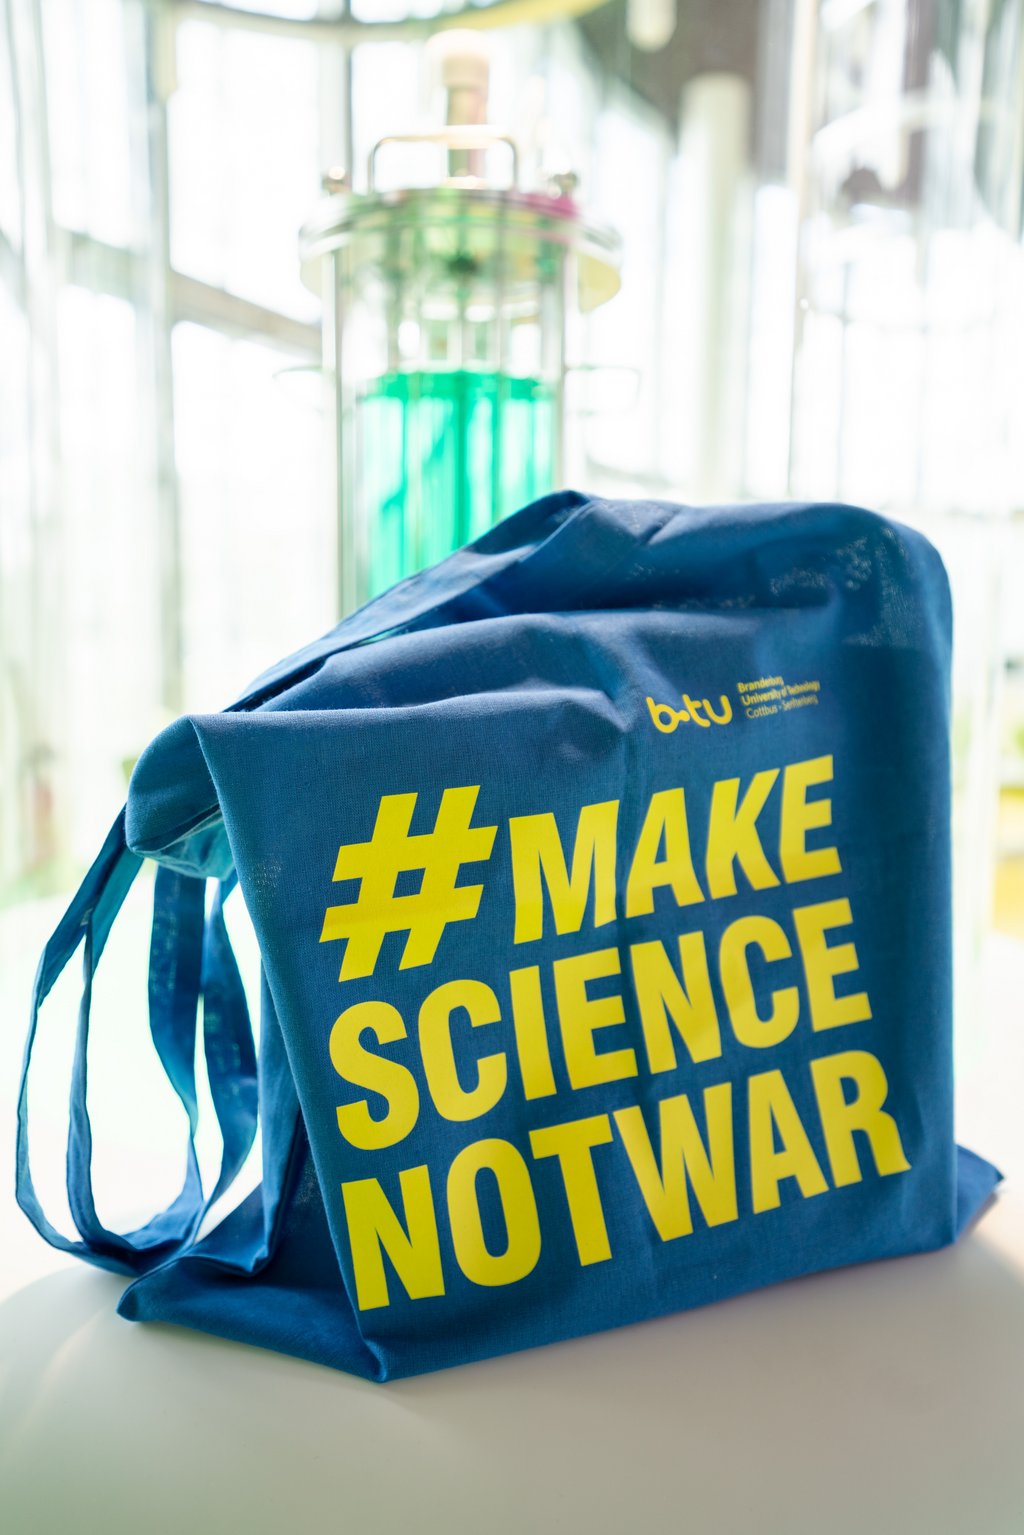 Foto eines Stoffbeutels mit der Aufschrift "Make Science not war"s